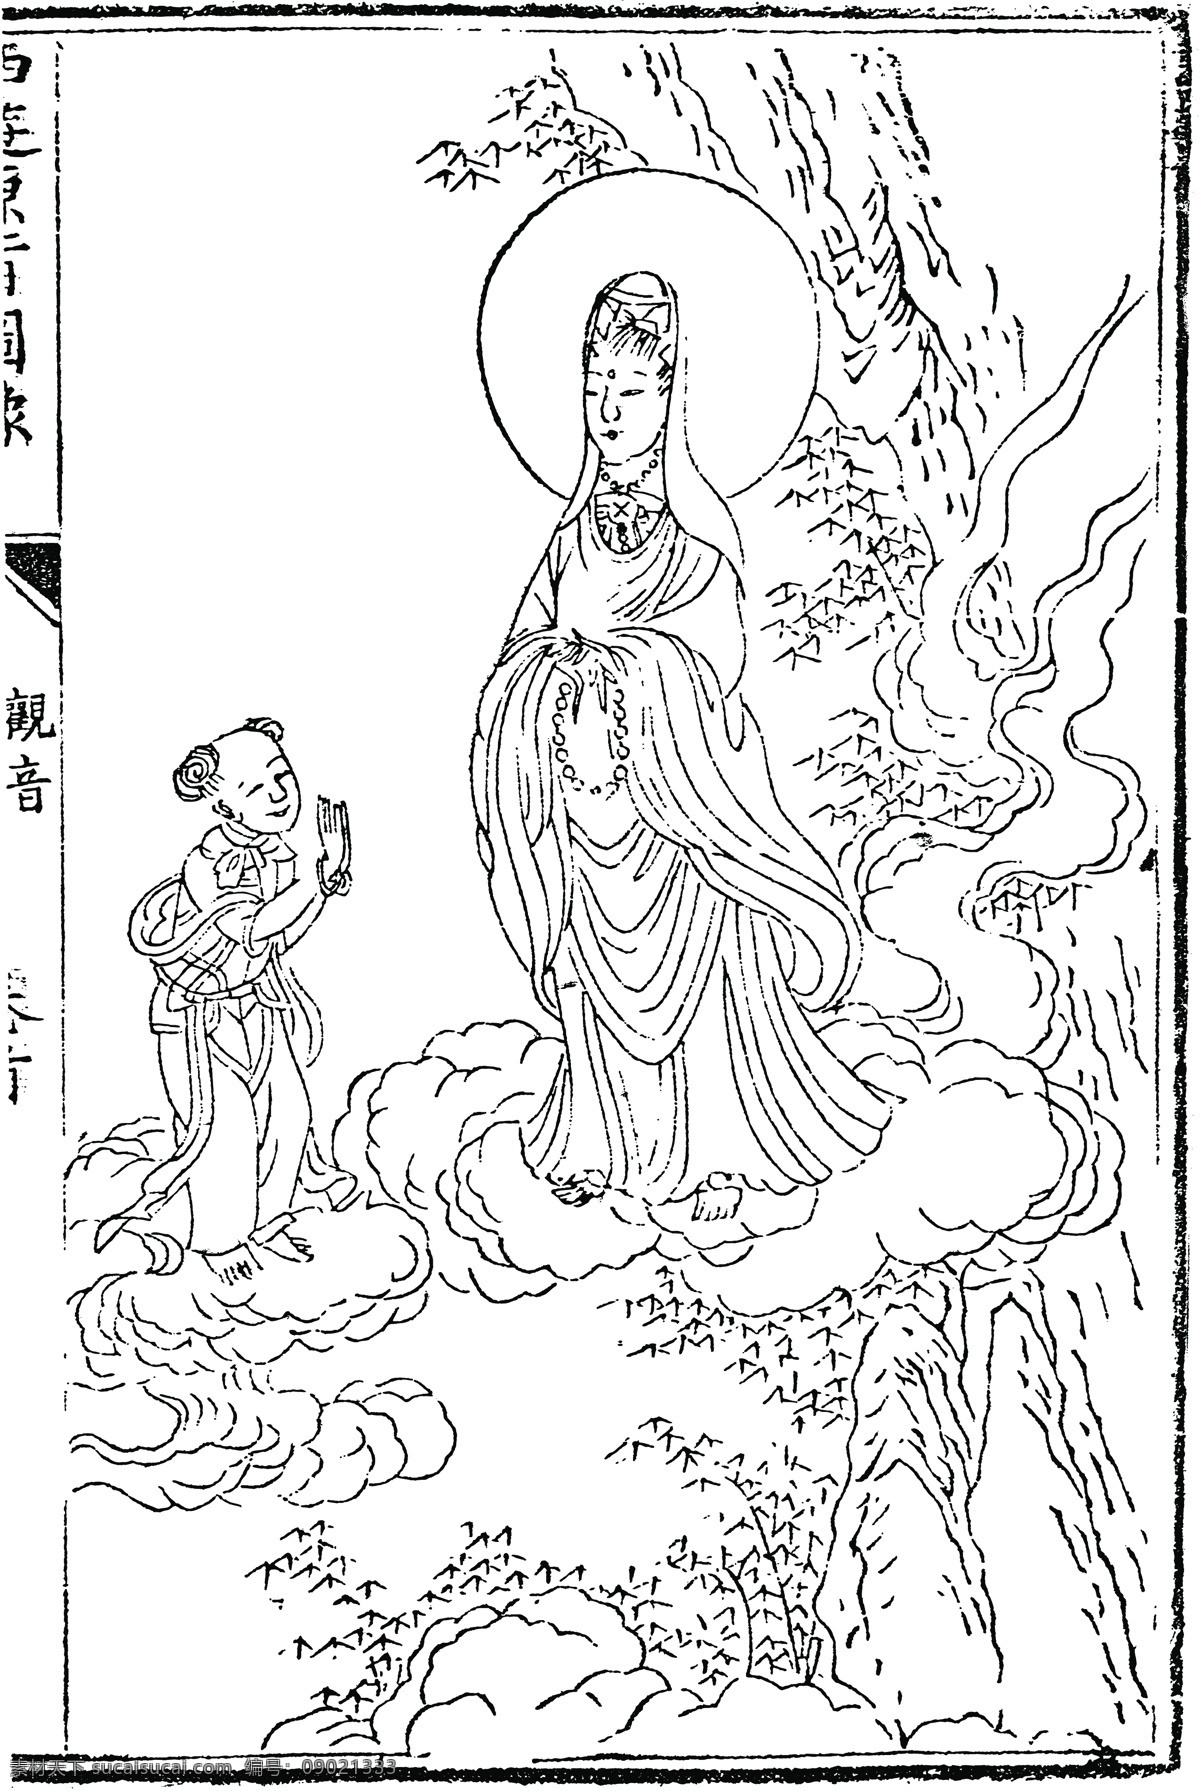 中国 古典文学 插图 木刻版画 传统文化 37 中国传统文化 设计素材 版画世界 书画美术 白色